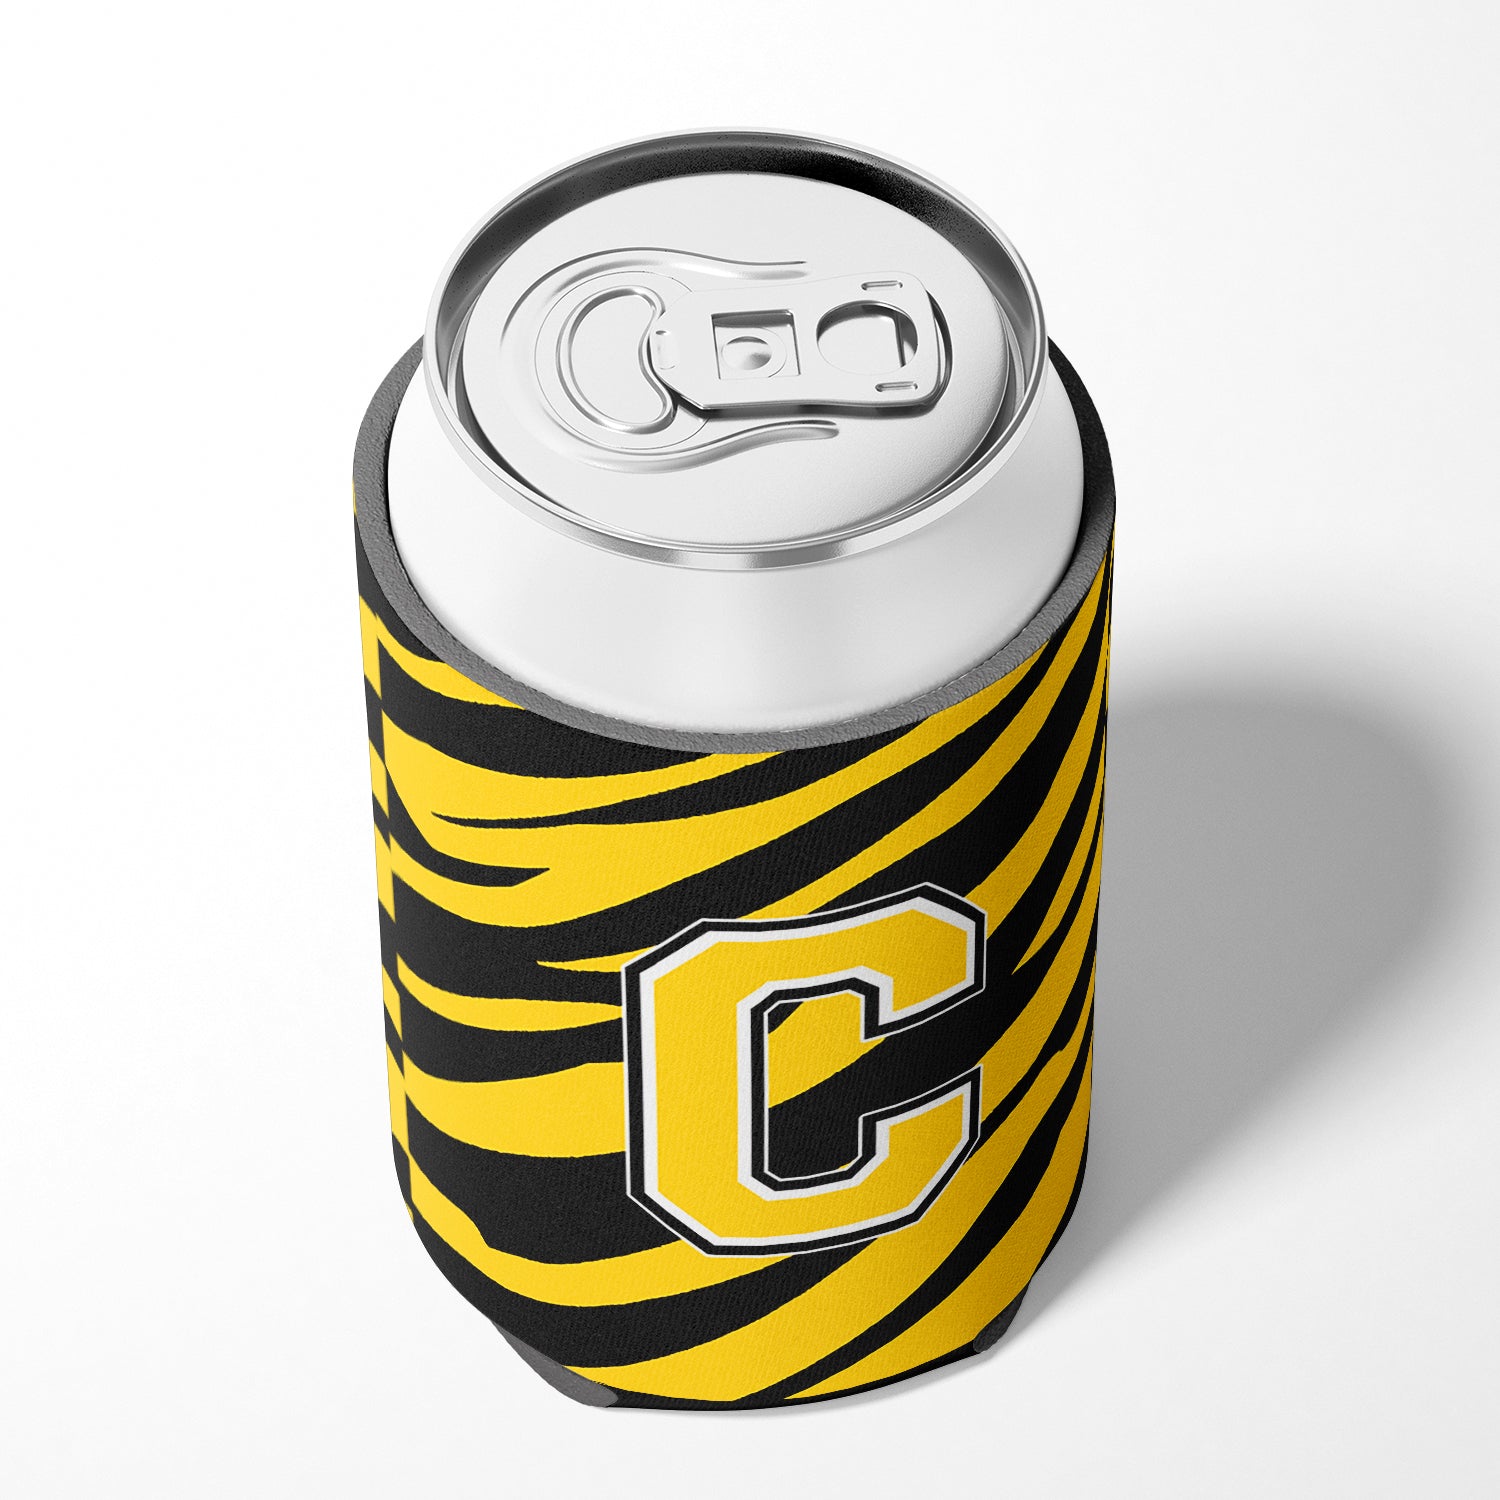 Letter C Initial Monogram - Tiger Stripe - Black Gold Can Beverage Insulator Hugger.